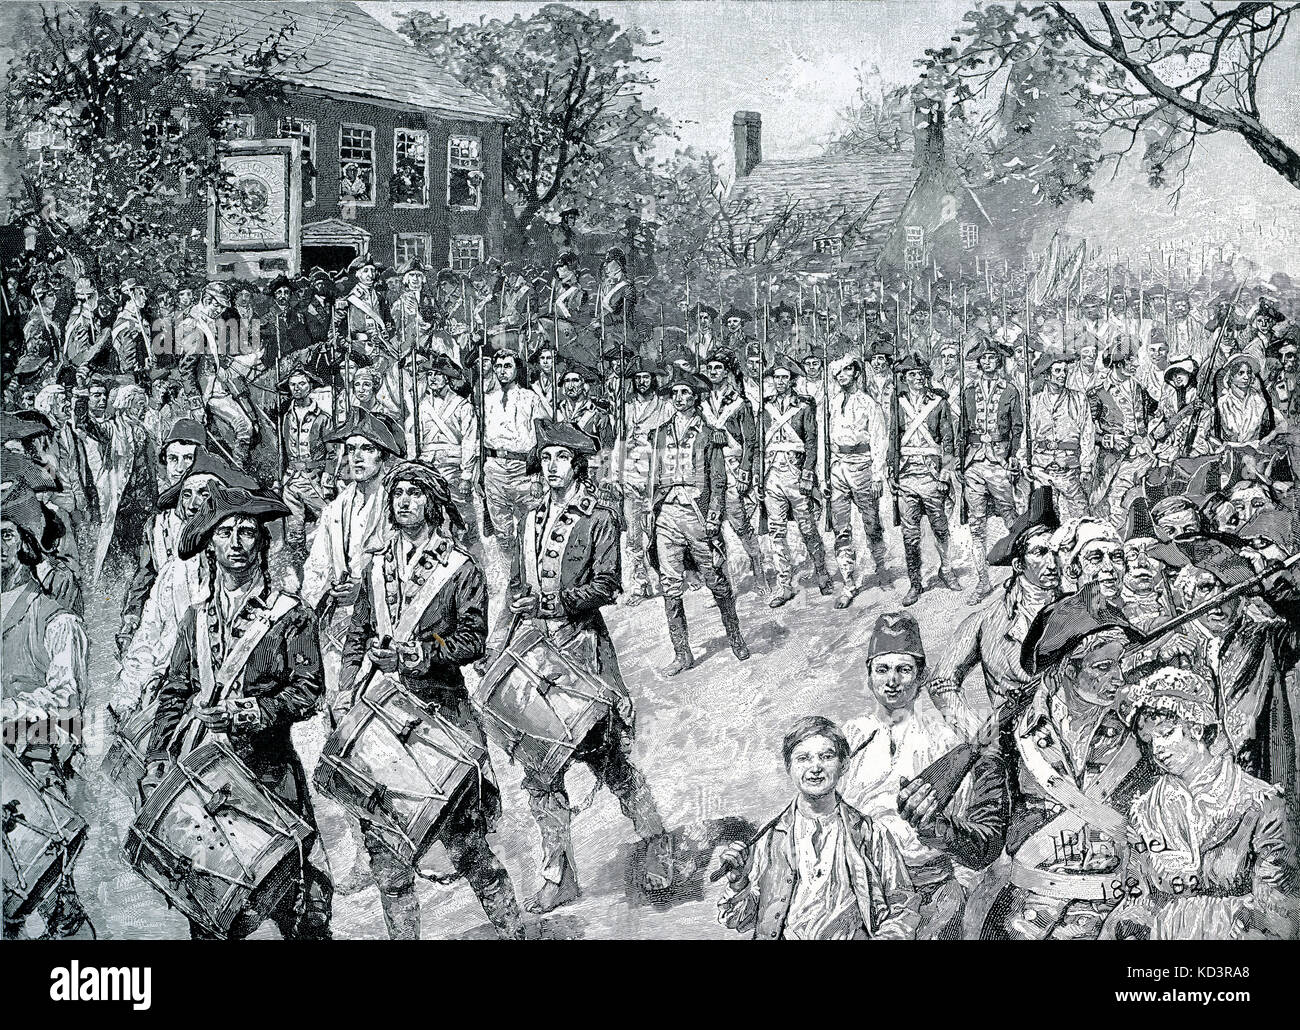 Esercito continentale che marciava giù Old Bowery, New York, 25 novembre 1783. Le forze di Washington prendono la posizione di New York alla fine della Rivoluzione americana. Illustrazione di Howard Pyle, 1896 Foto Stock